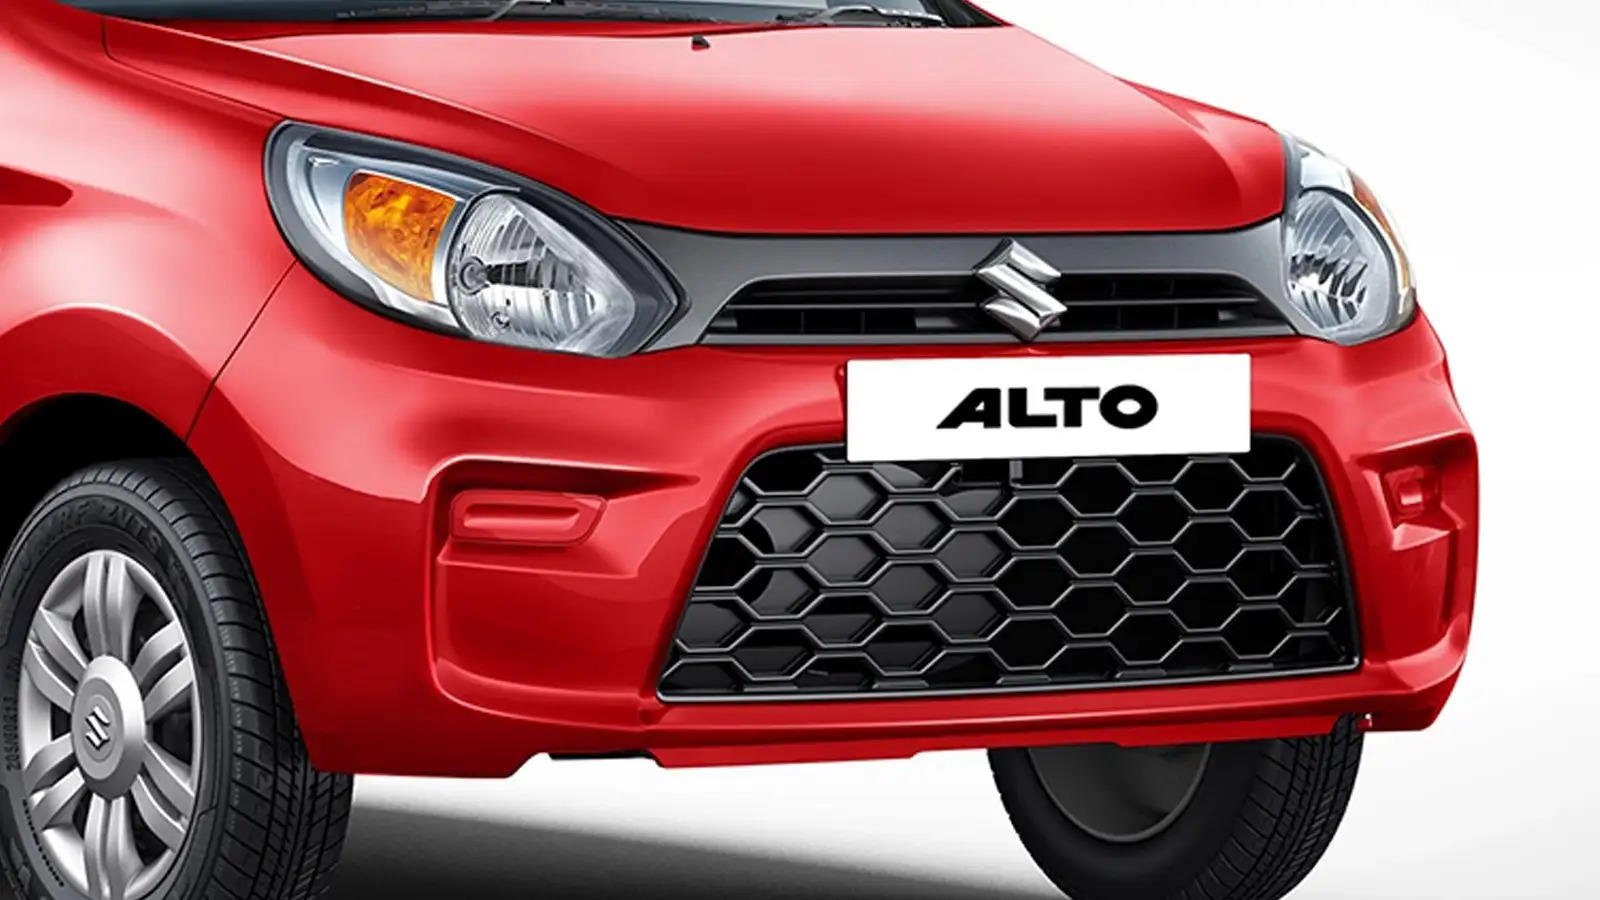 मात्र 65 हजार में पाएं Maruti Alto 800 खरीदने का मौका, इससे शानदार मौका आगे नहीं मिलने वाला